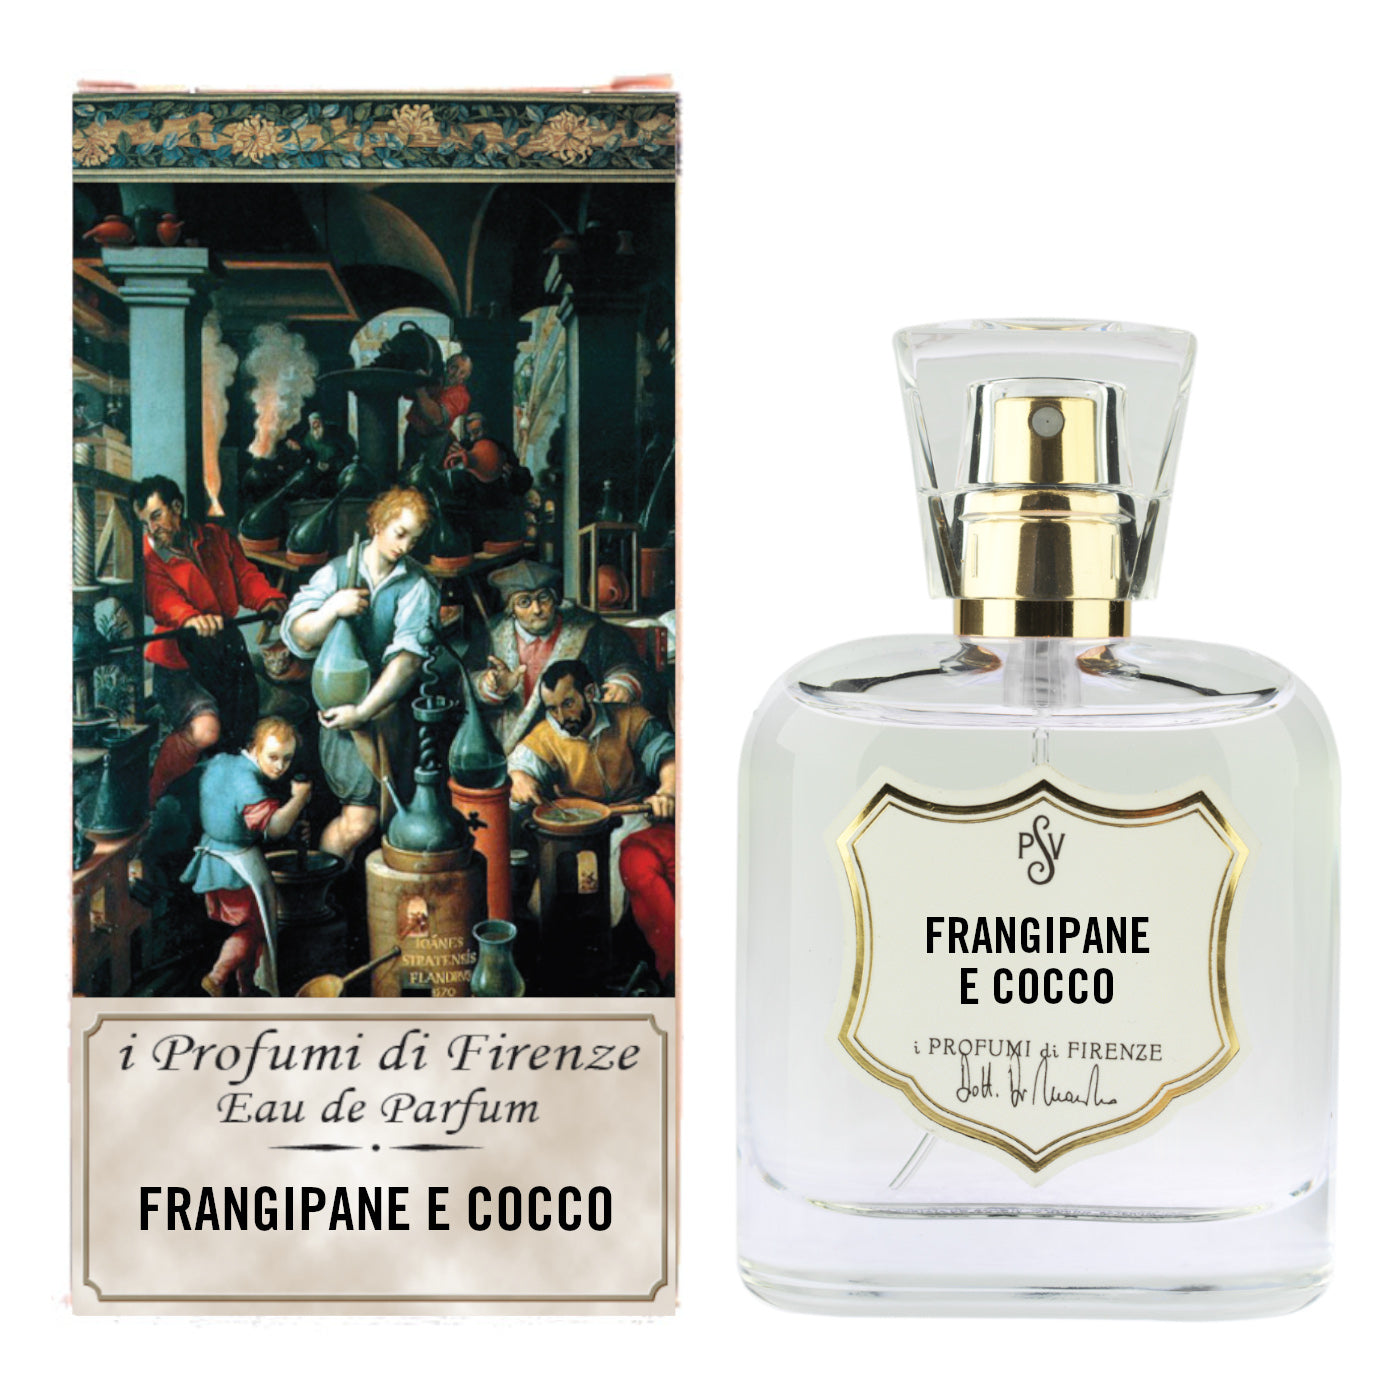 SPEZIERIE PALAZZO VECCHIO FRANGIPANE AND COCONUT Eau de Parfum 